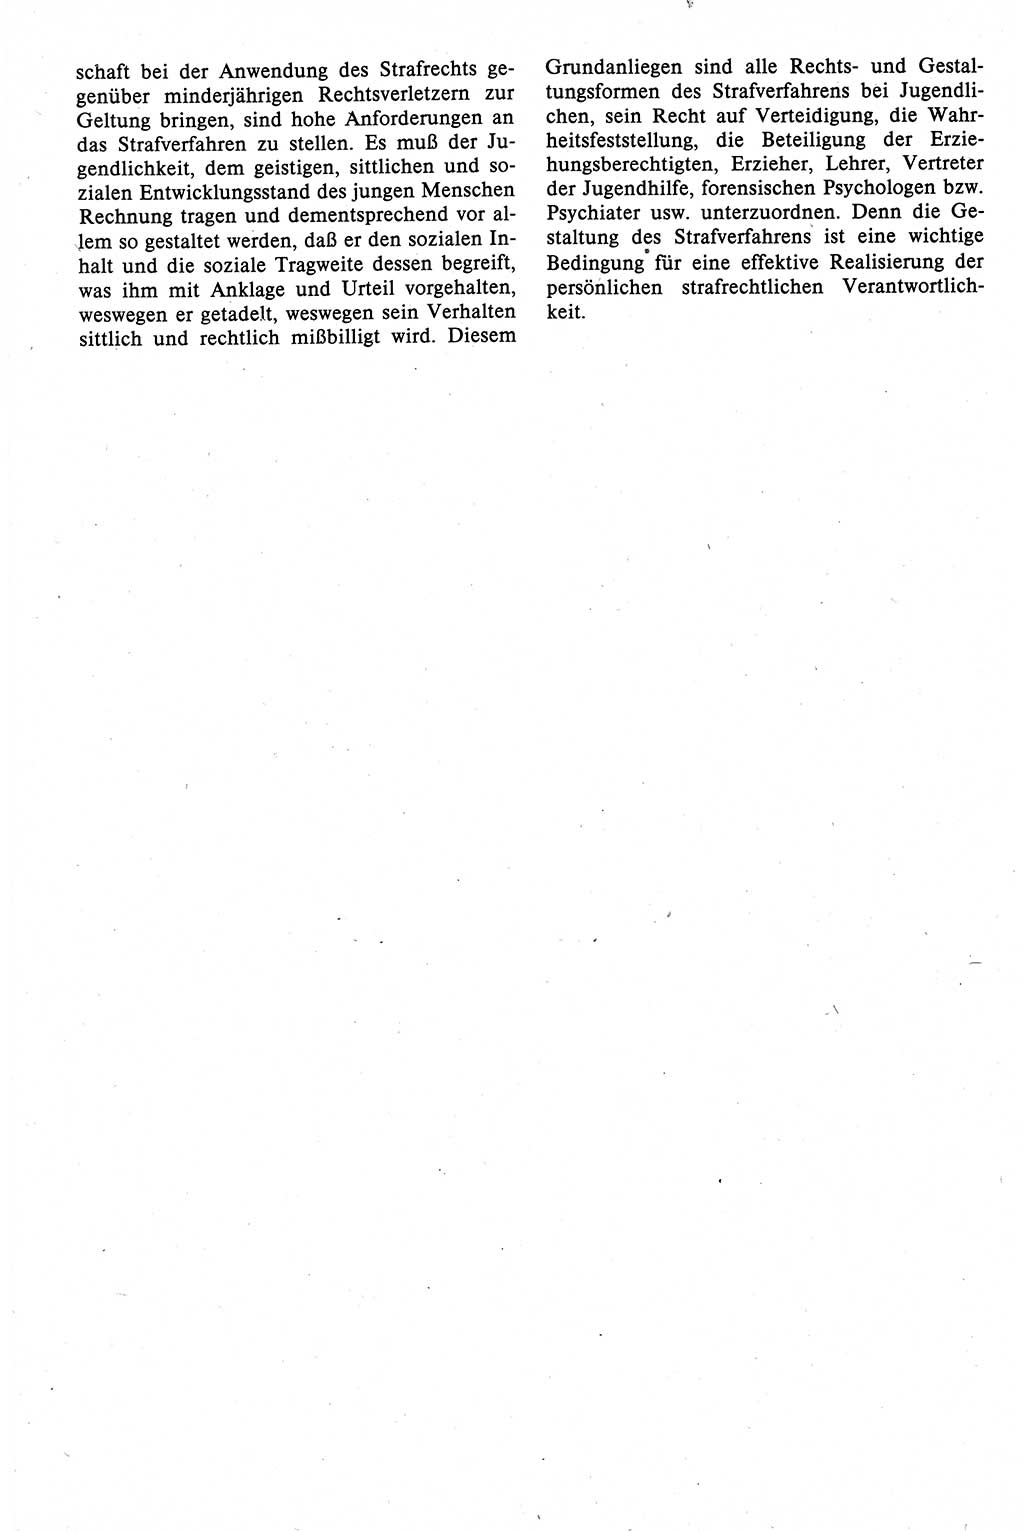 Strafrecht der DDR (Deutsche Demokratische Republik), Lehrbuch 1988, Seite 382 (Strafr. DDR Lb. 1988, S. 382)